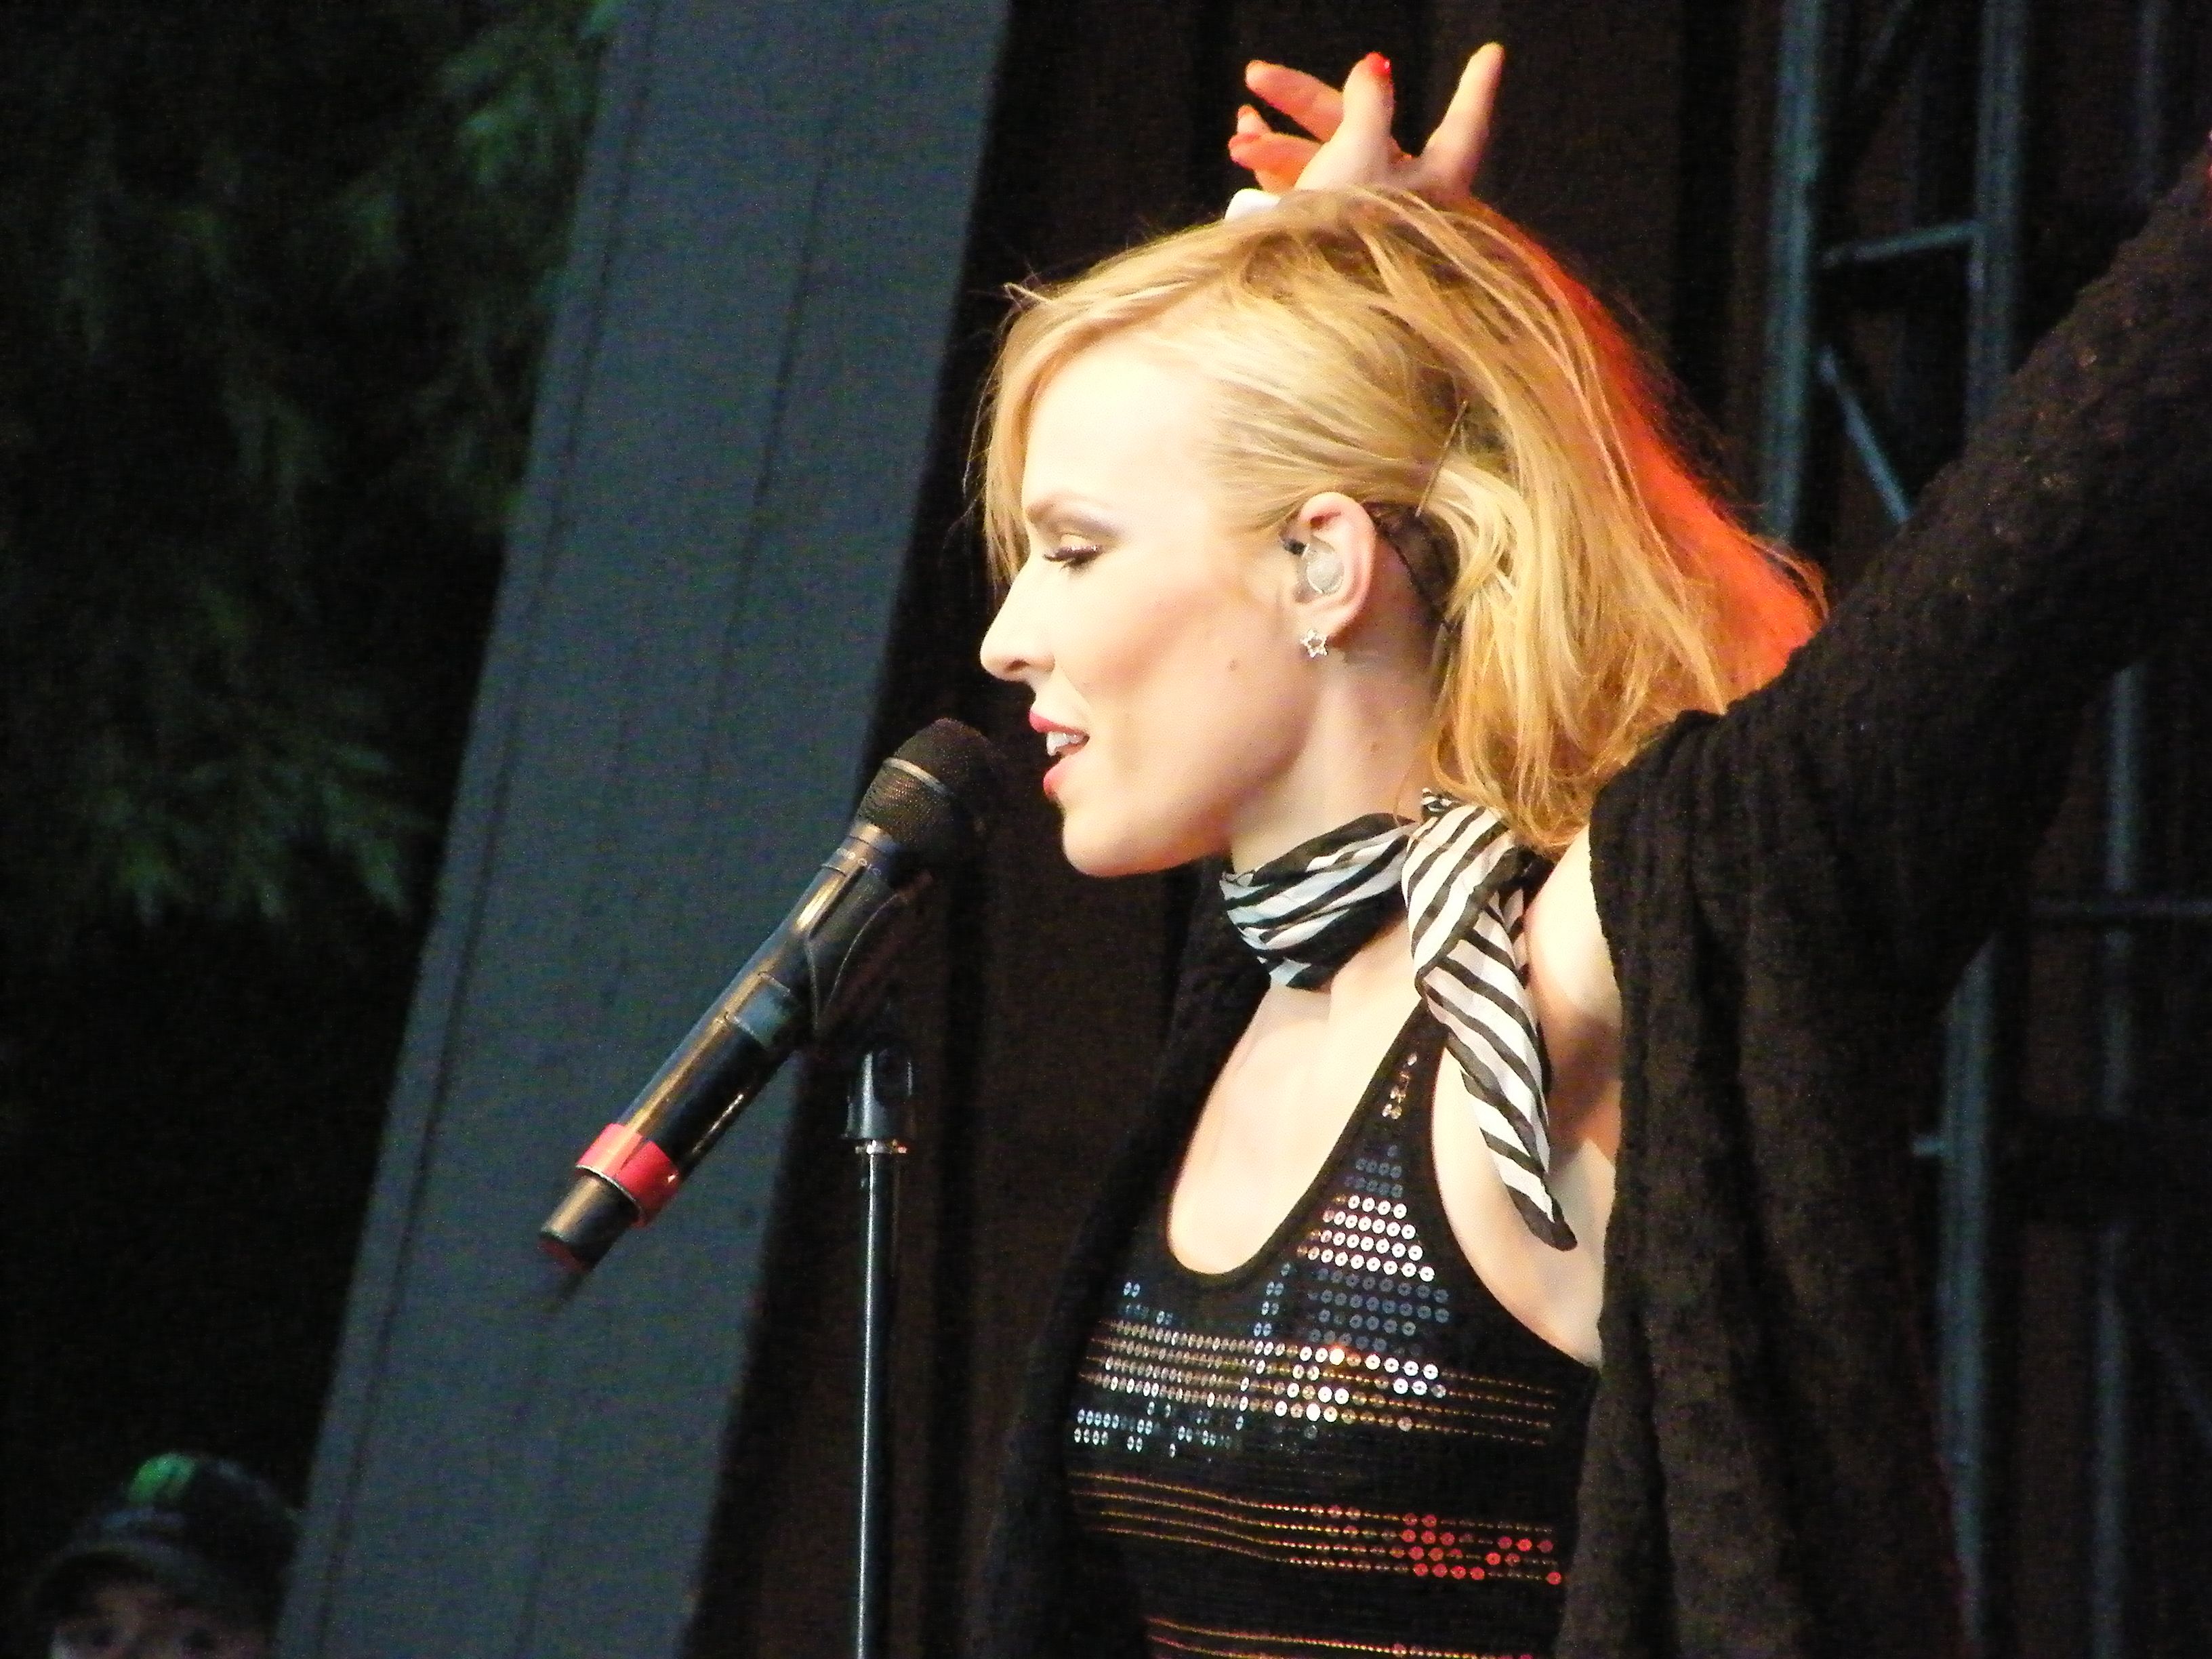 Natasha Bedingfield creatrice di Unwritten in un concerto del 2008